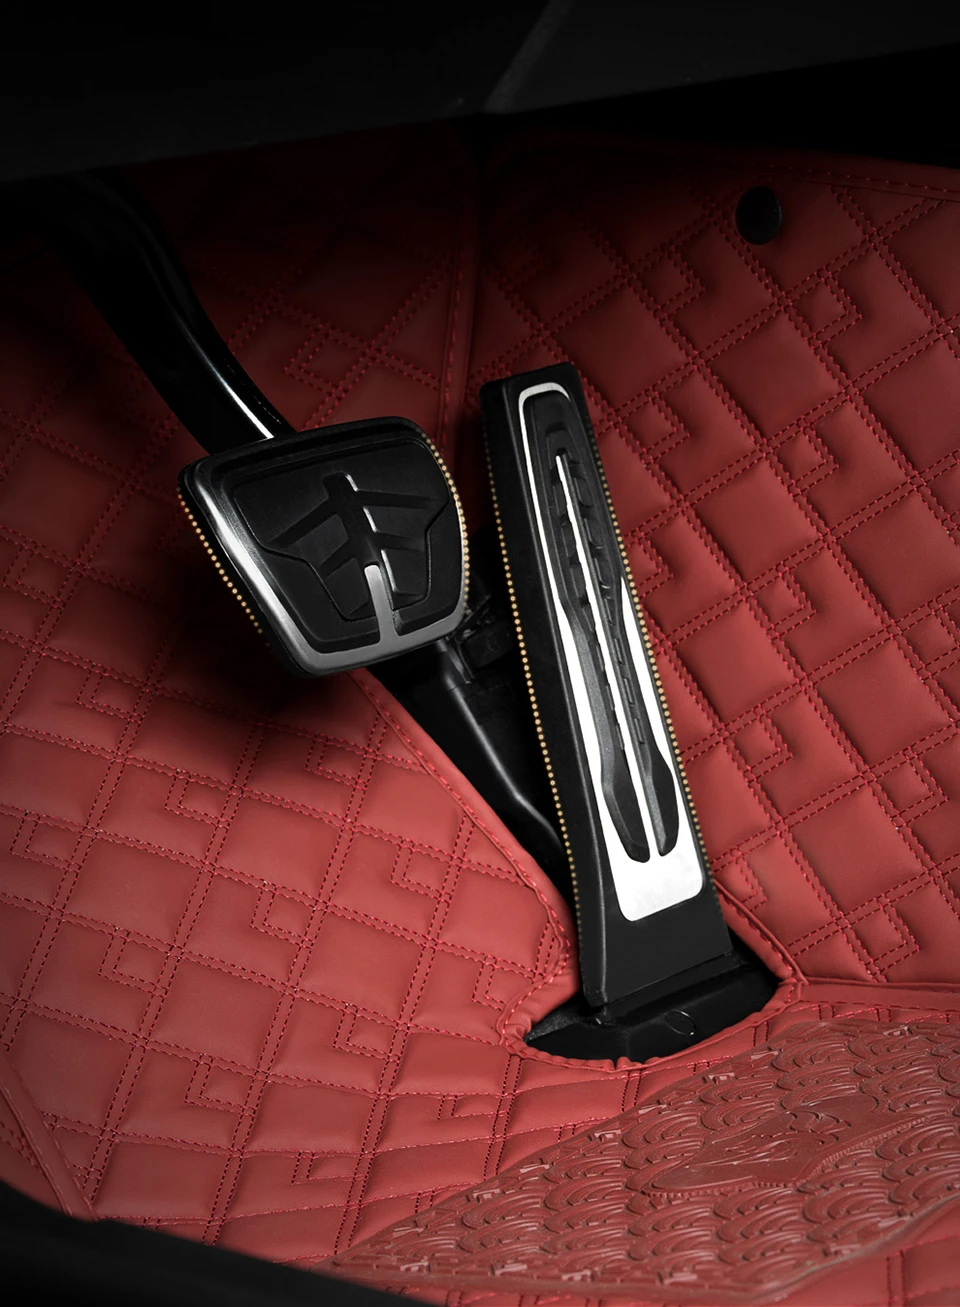 Обичай луксозни стелки за Honda Fit 2014-2020, автомобилни постелки, без бръчки, аксесоари, резервни части за интериора, пълен комплект